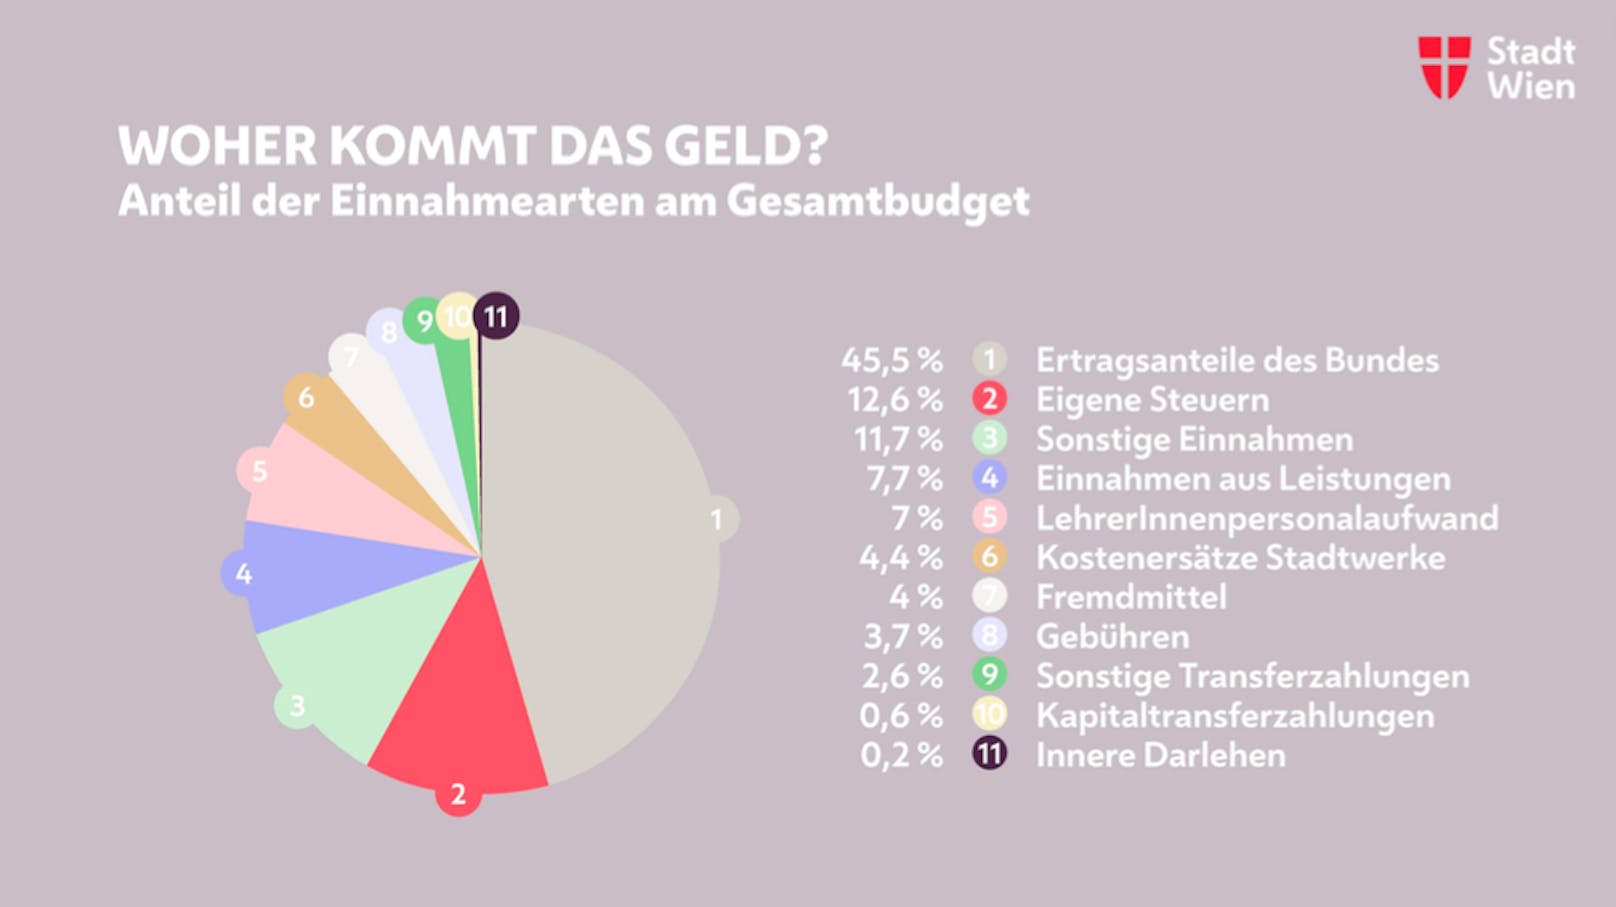 Die wichtigsten Einnahmen sind die Ertragsanteile des Bundes (6,5 Milliarden Euro).